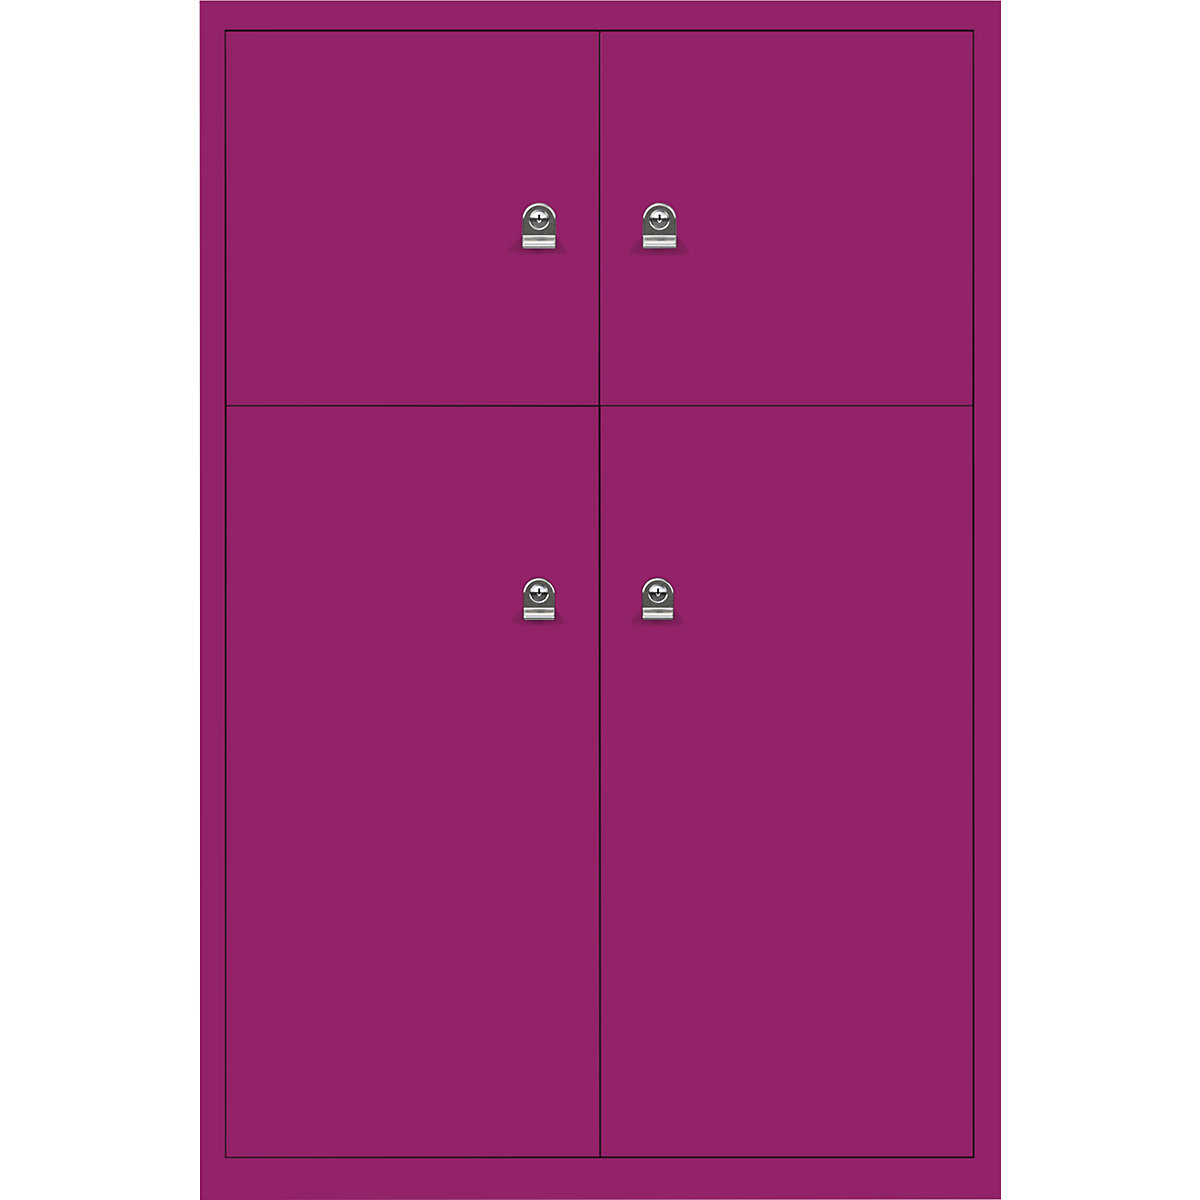 Ormar LateralFile™ Lodge – BISLEY, s 4 pretinca sa zaključavanjem, visina 2 x 375 mm, 2 x 755 mm, u fuksija ružičastoj boji-8